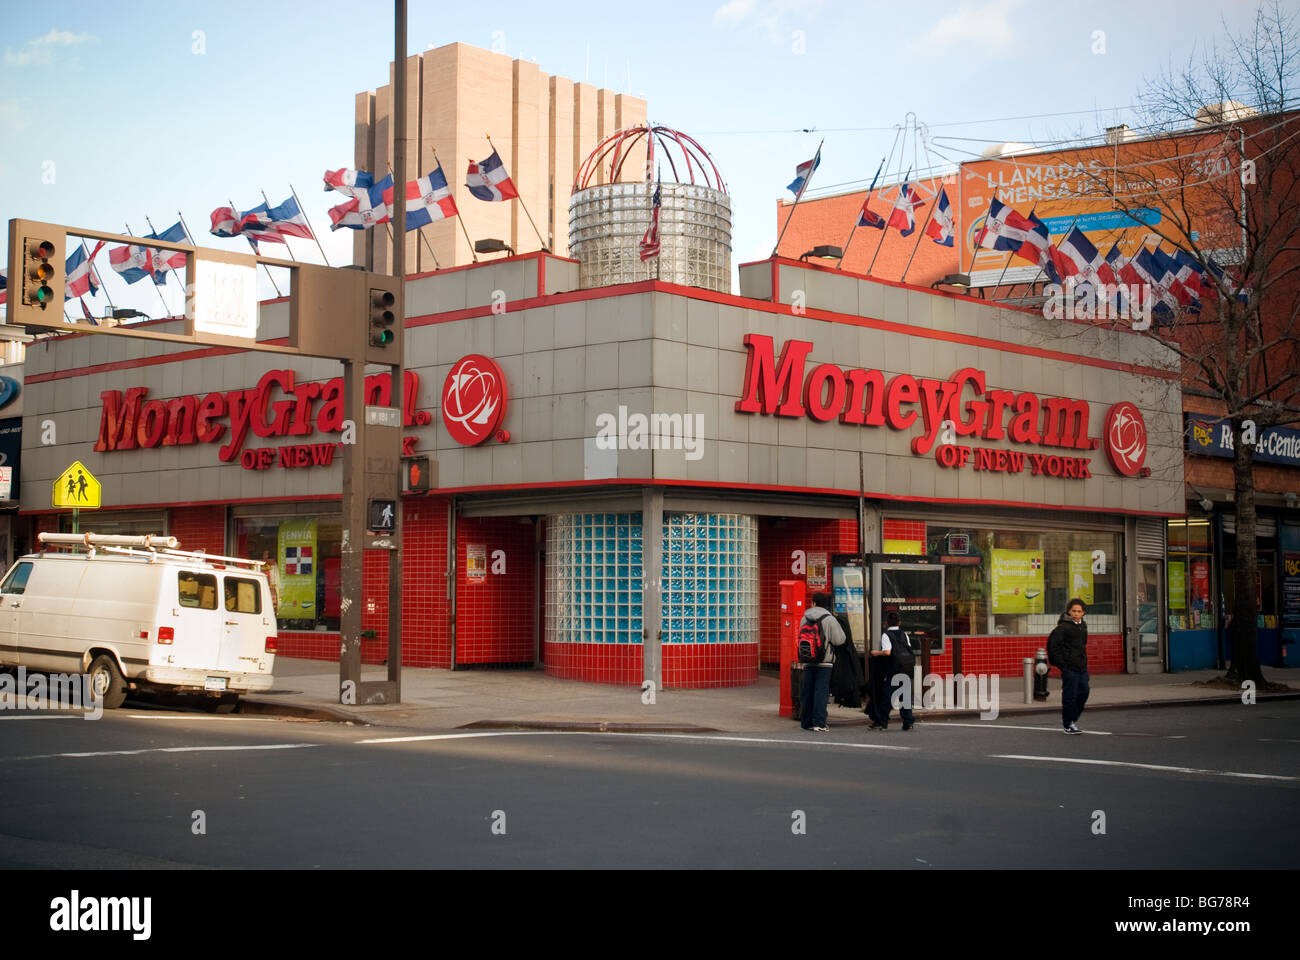 Una oficina de Moneygram, una empresa de transferencia de fondos, en el barrio predominantemente hispano de Washington Heights en Nueva York Foto de stock